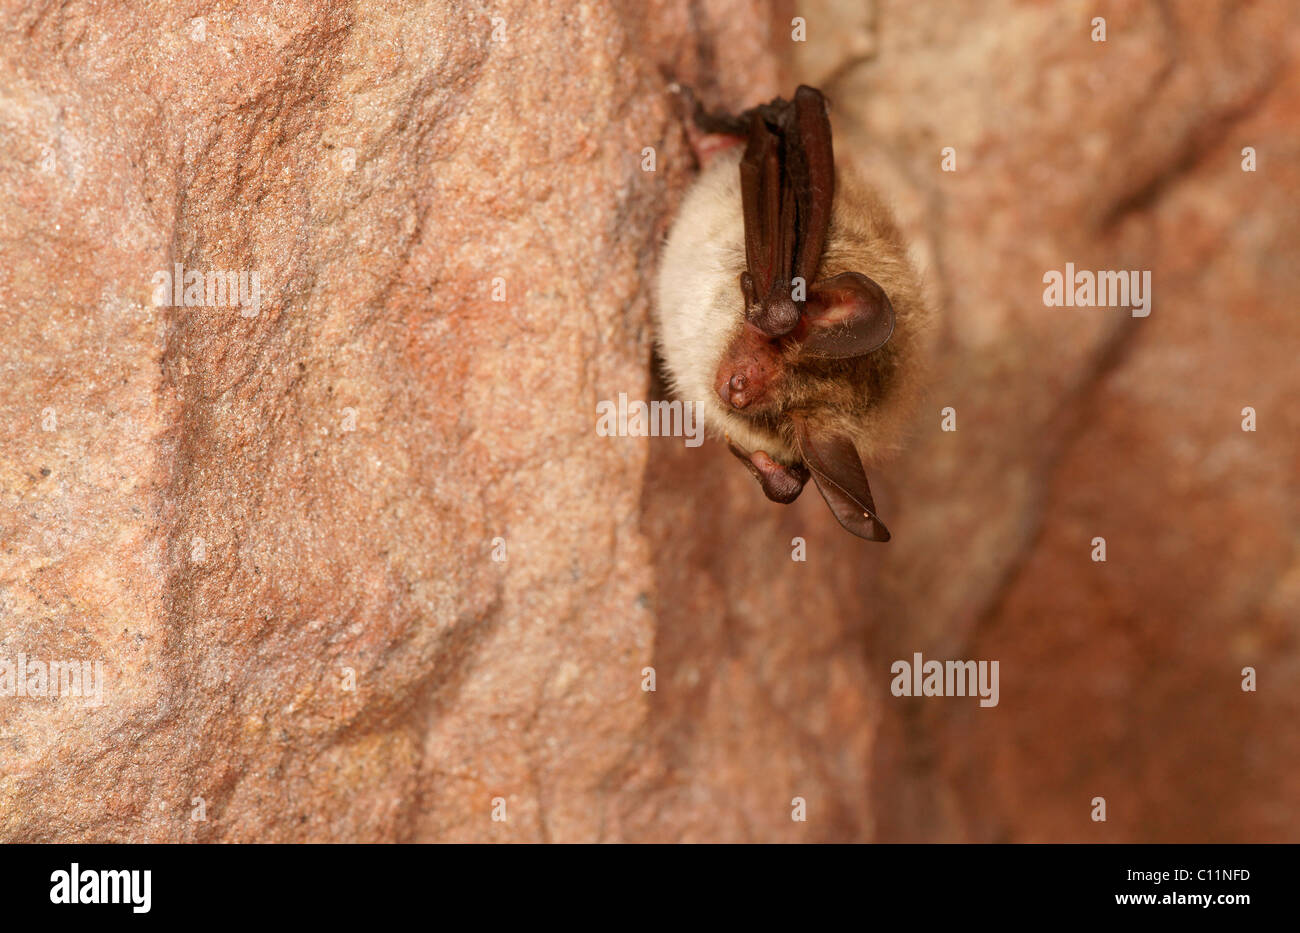 Bechstein's Bat (Myotis bechsteinii) during hibernation Stock Photo